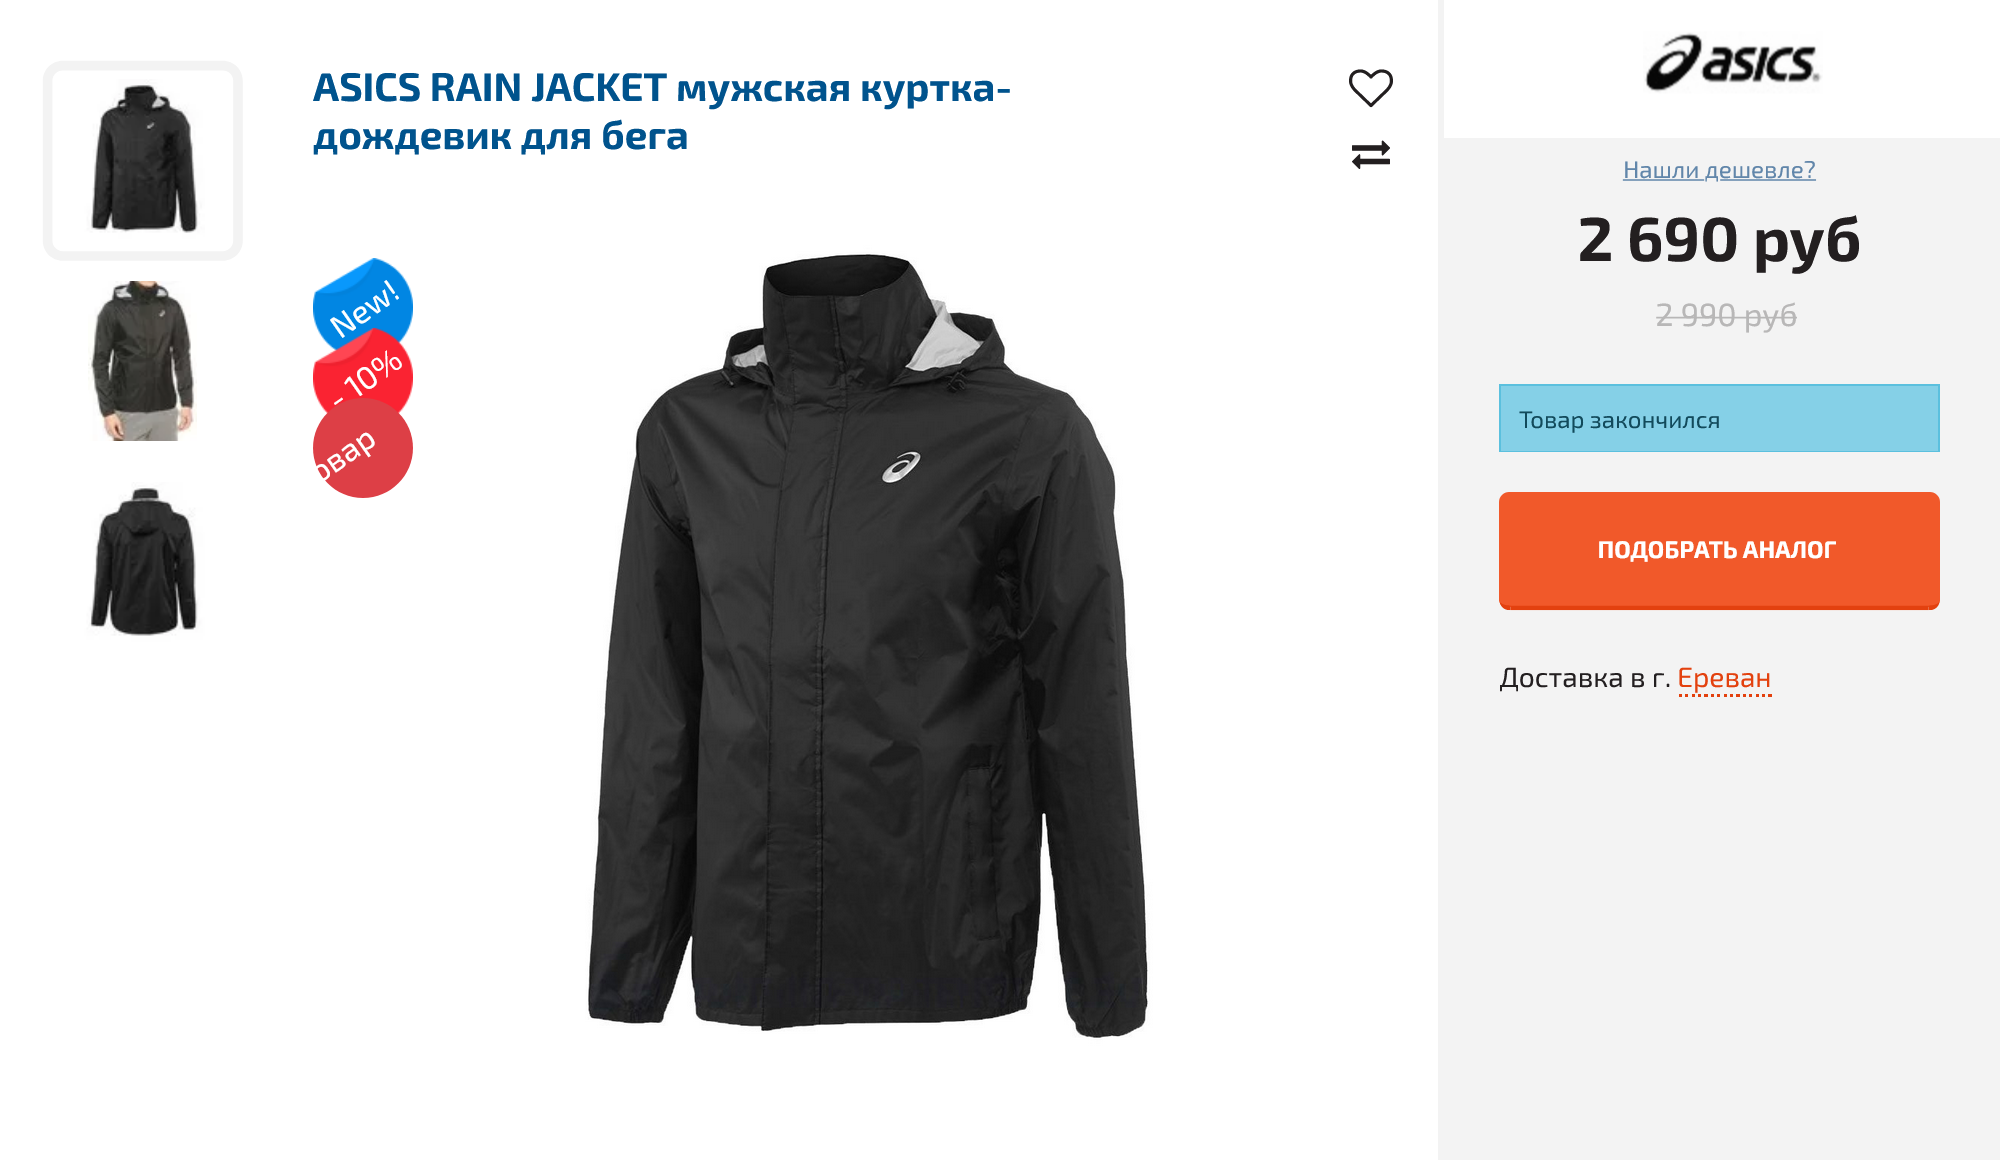 Непромокаемая куртка должна быть не слишком длинной, чтобы не мешать во время бега. Источник: five-sport.ru